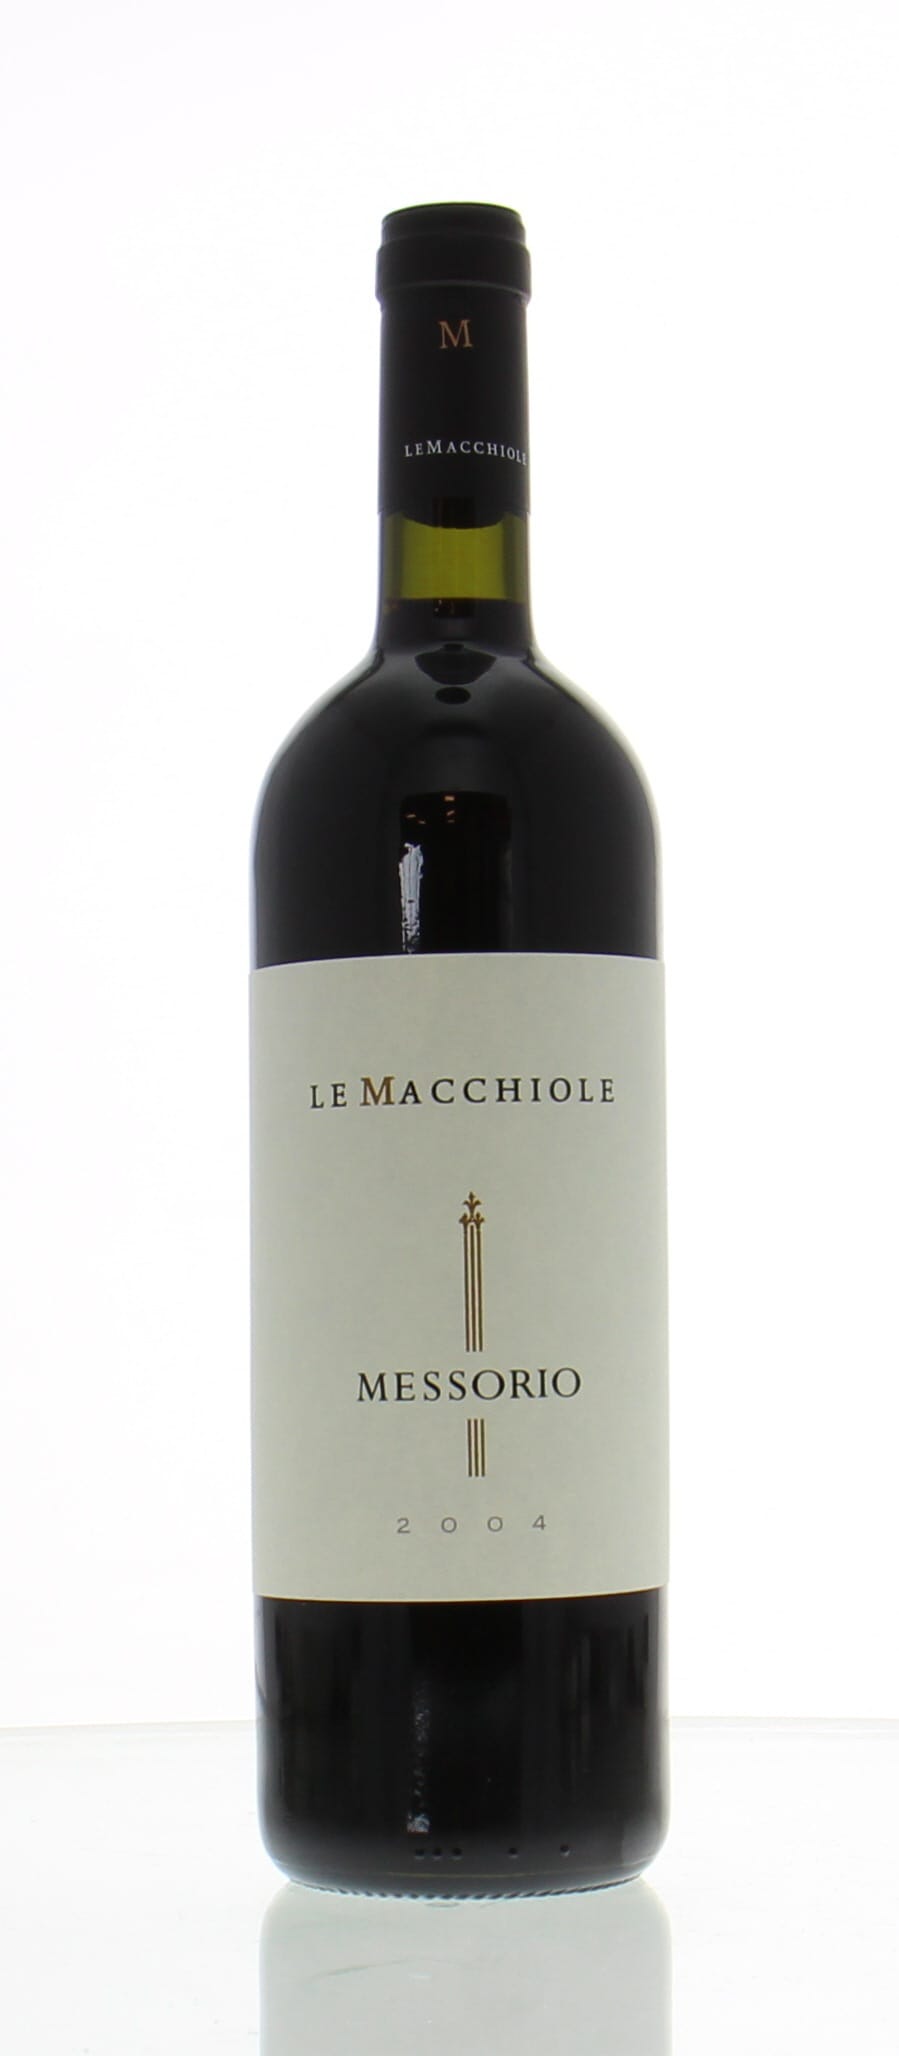 Le Macchiole - Messorio 2004 Perfect